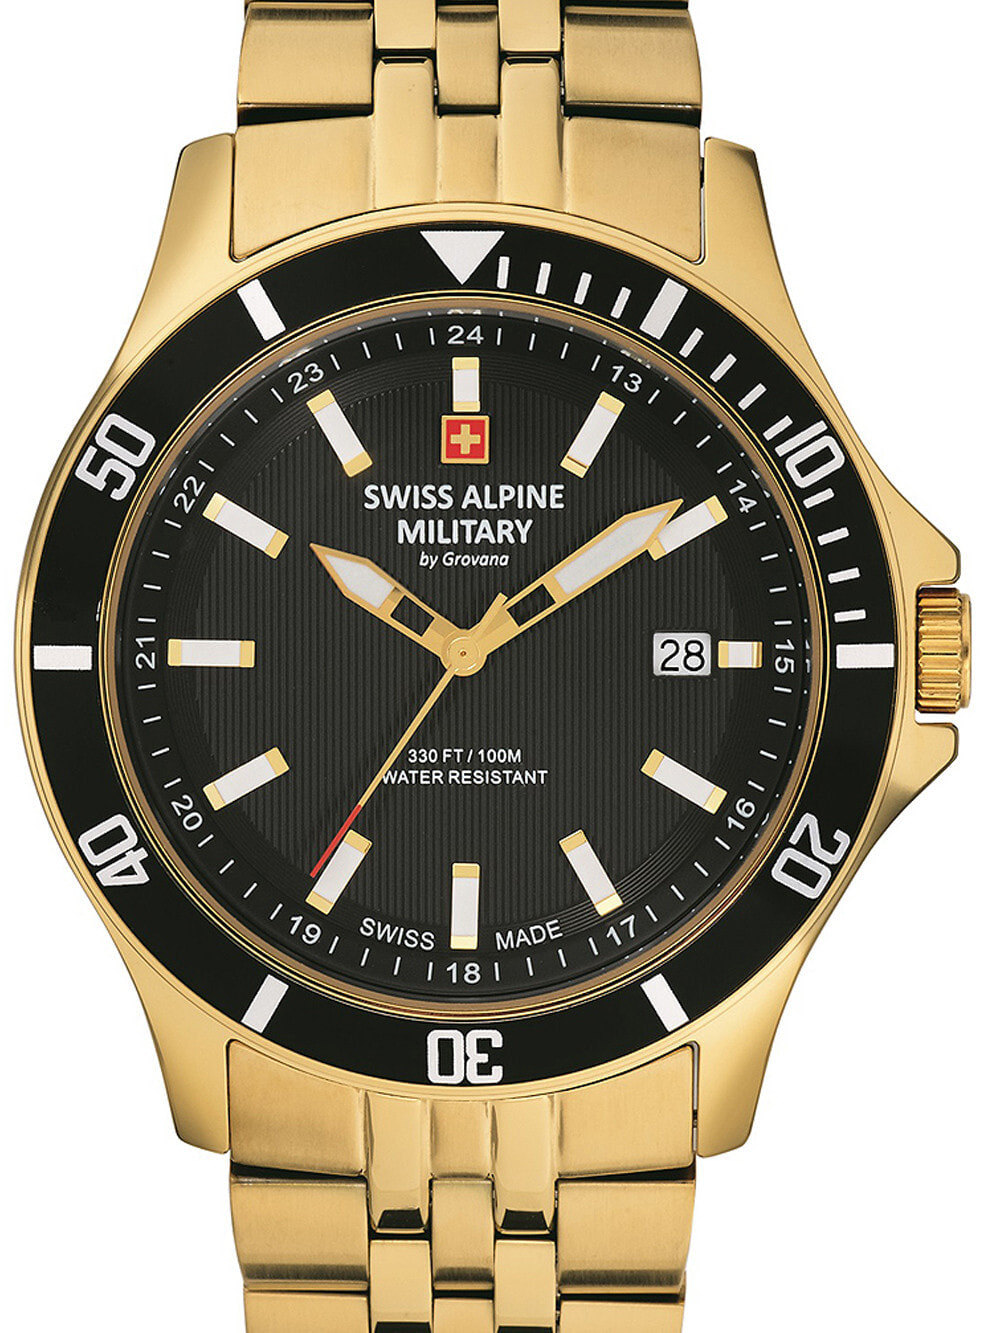 Мужские наручные часы с золотым браслетом Swiss Alpine Military 7022.1117 mens 42mm 10ATM